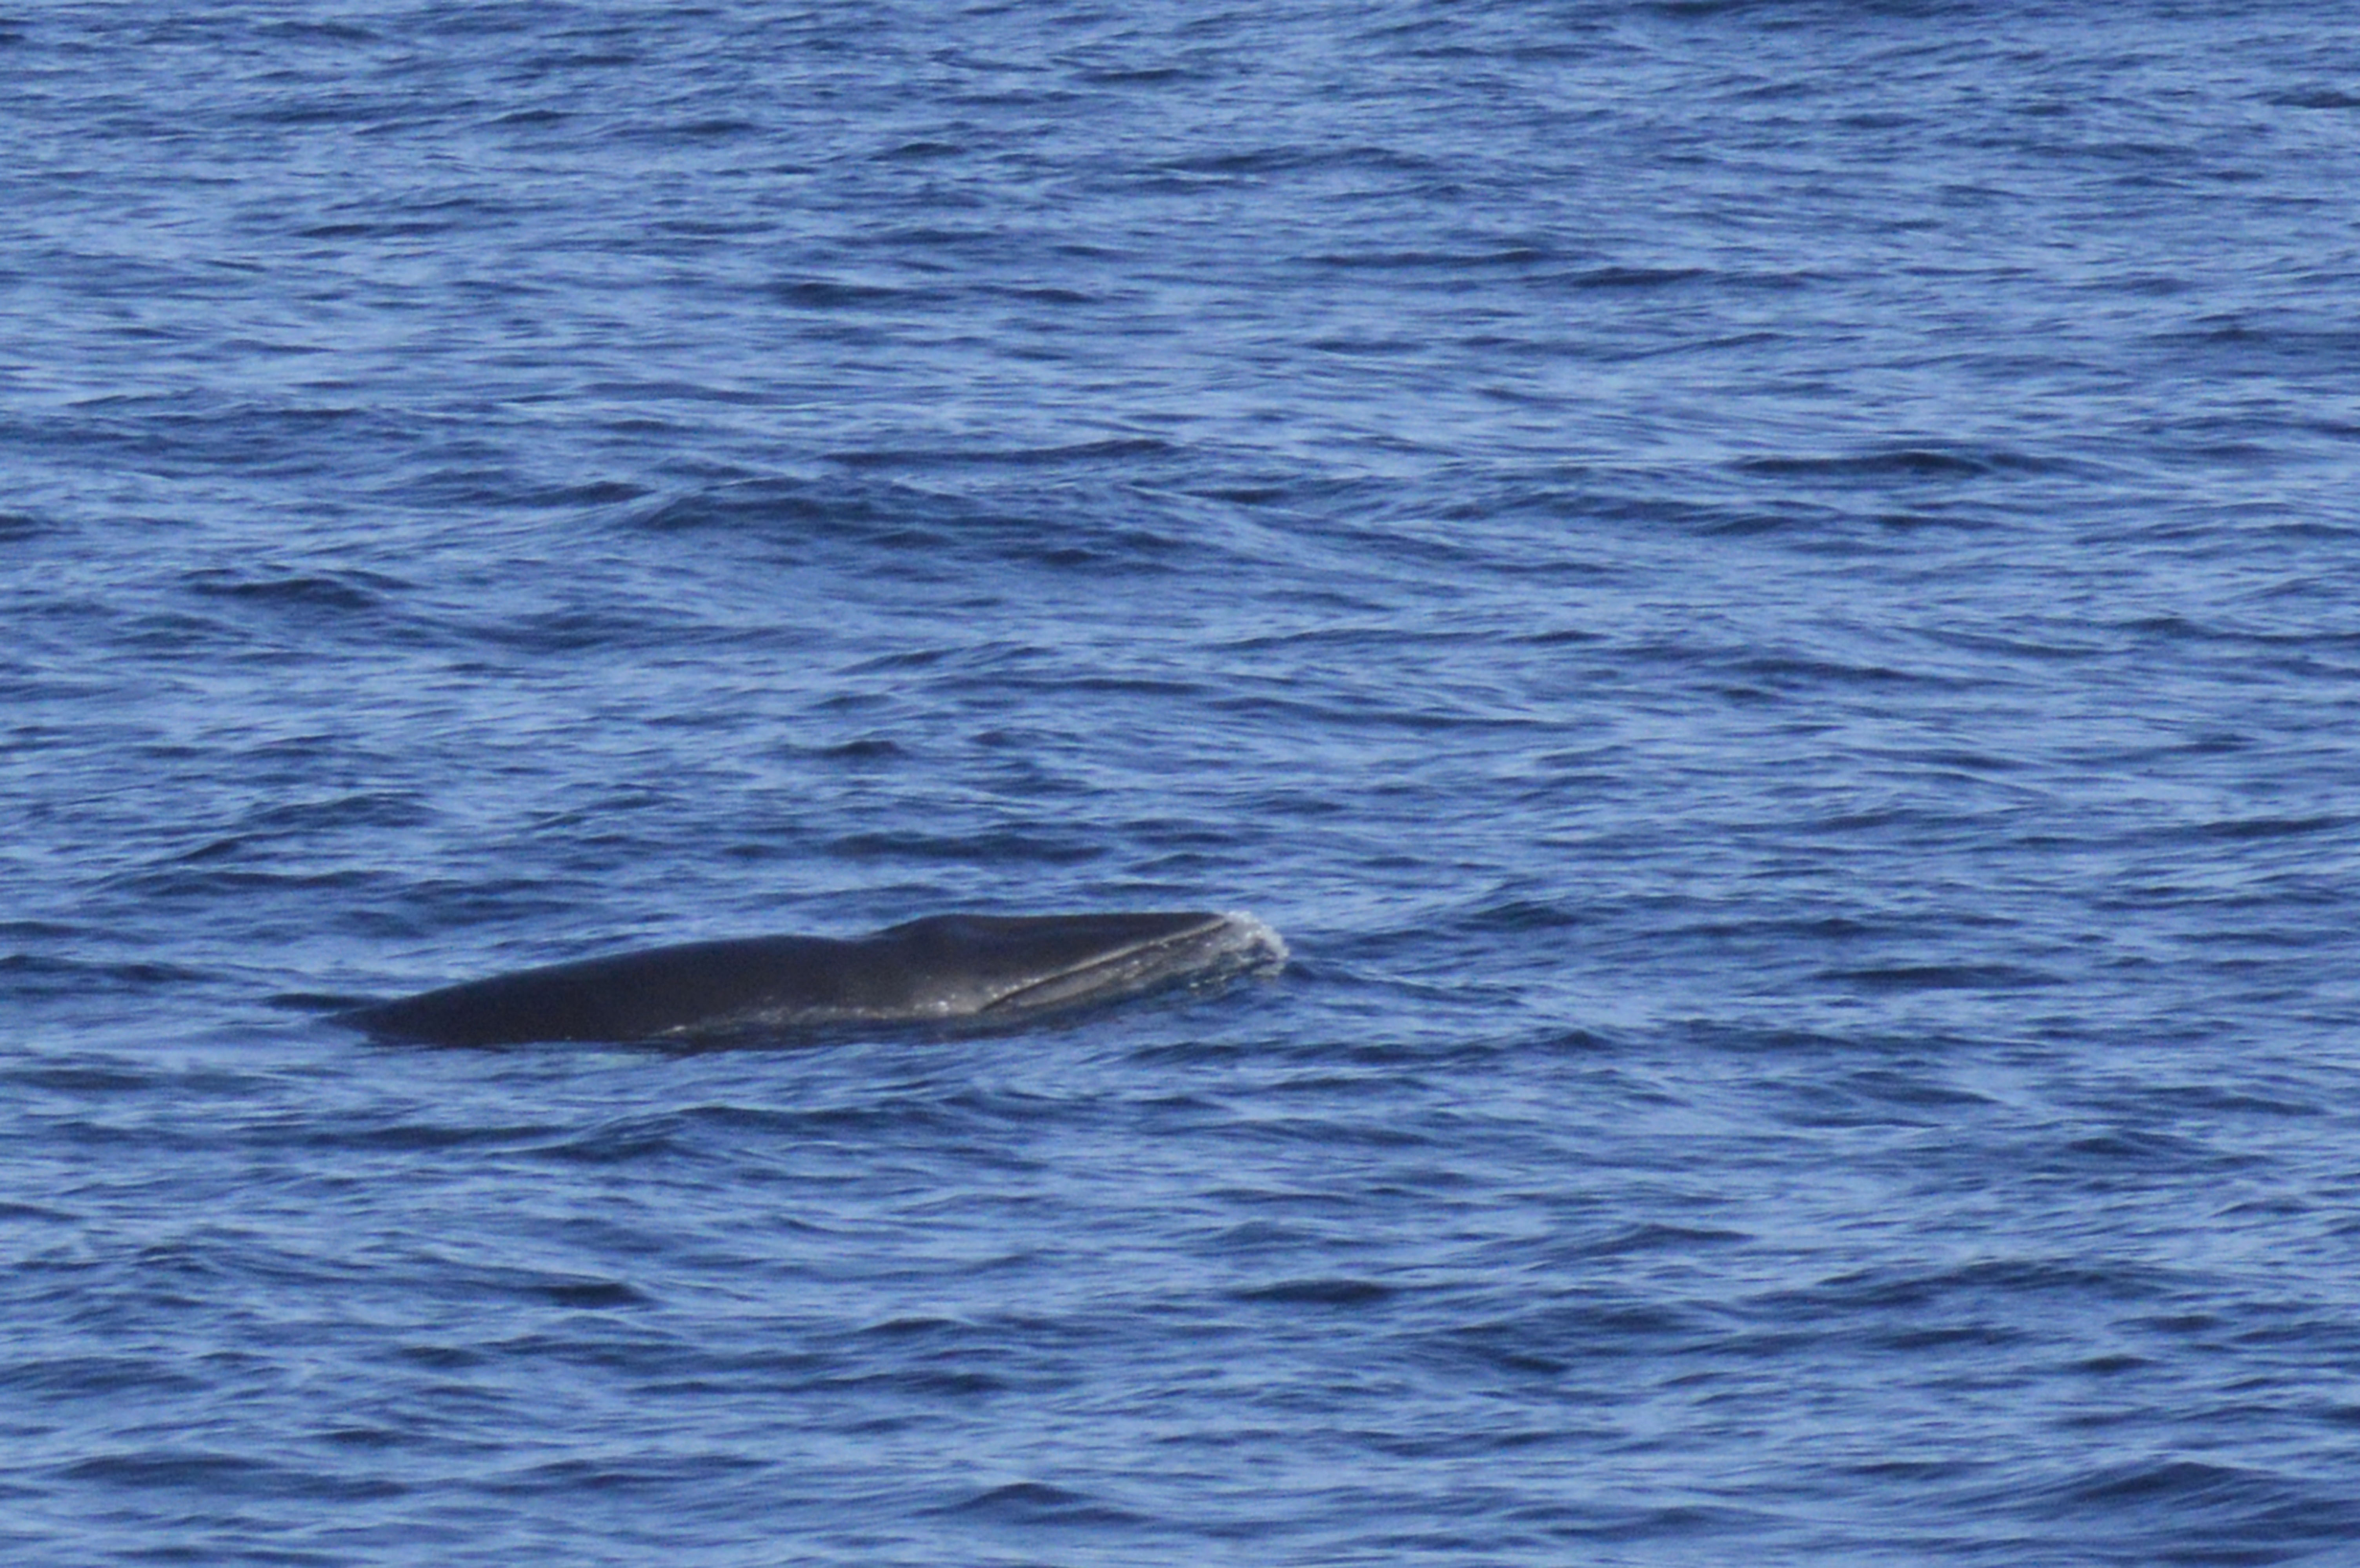 Minke whale's head, Islandia